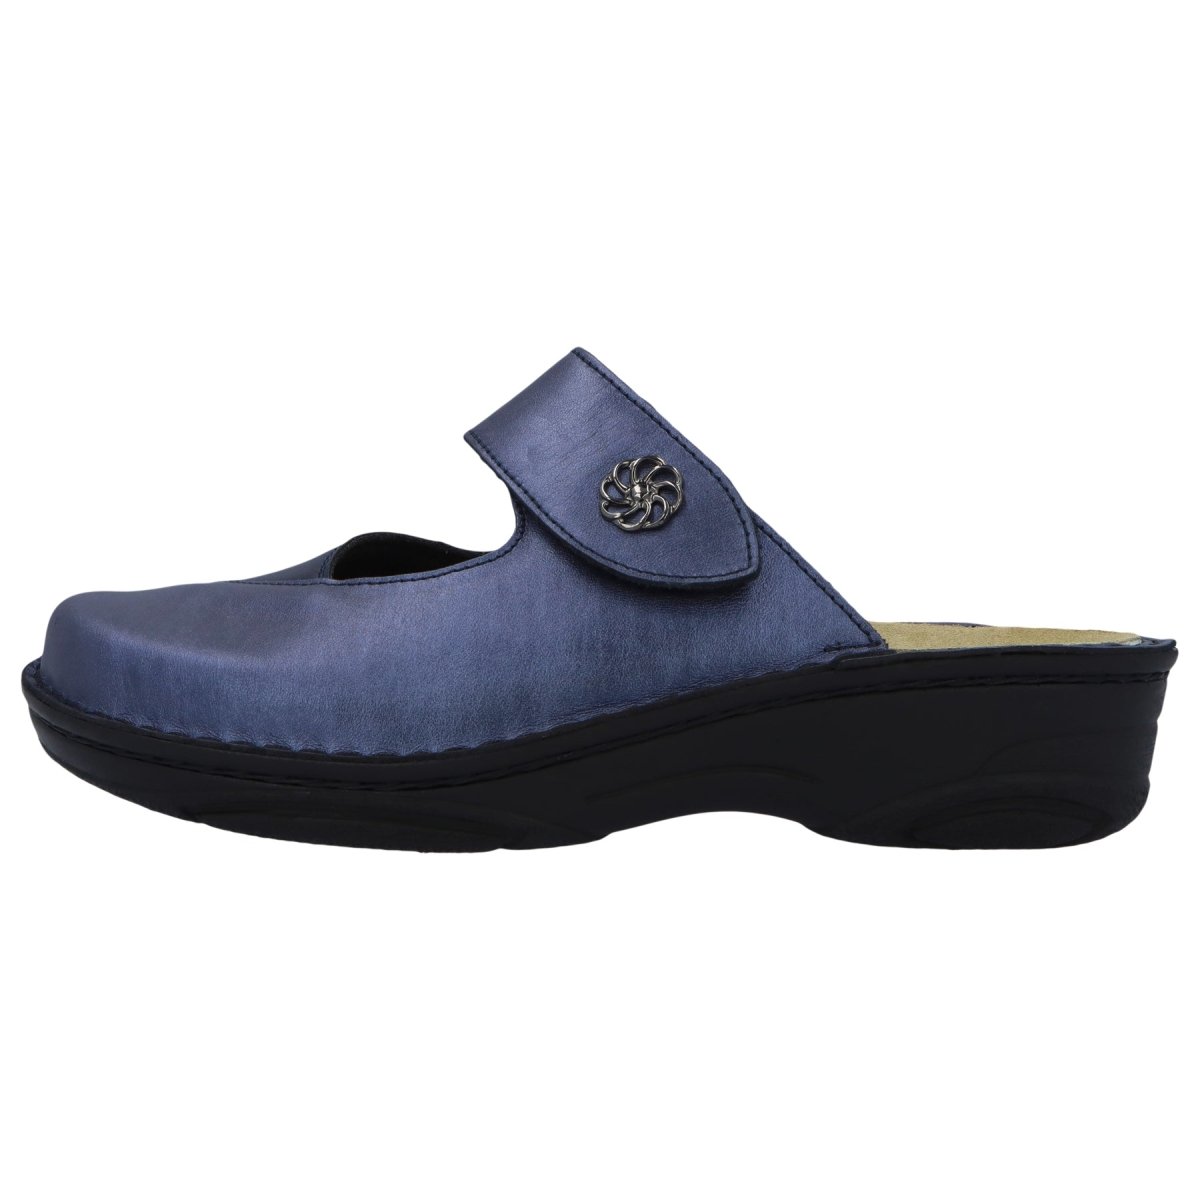 BERKEMANN HELIANE WOMEN'S CLOG IN BLUE LEATHER/STRETCH - TLW Shoes